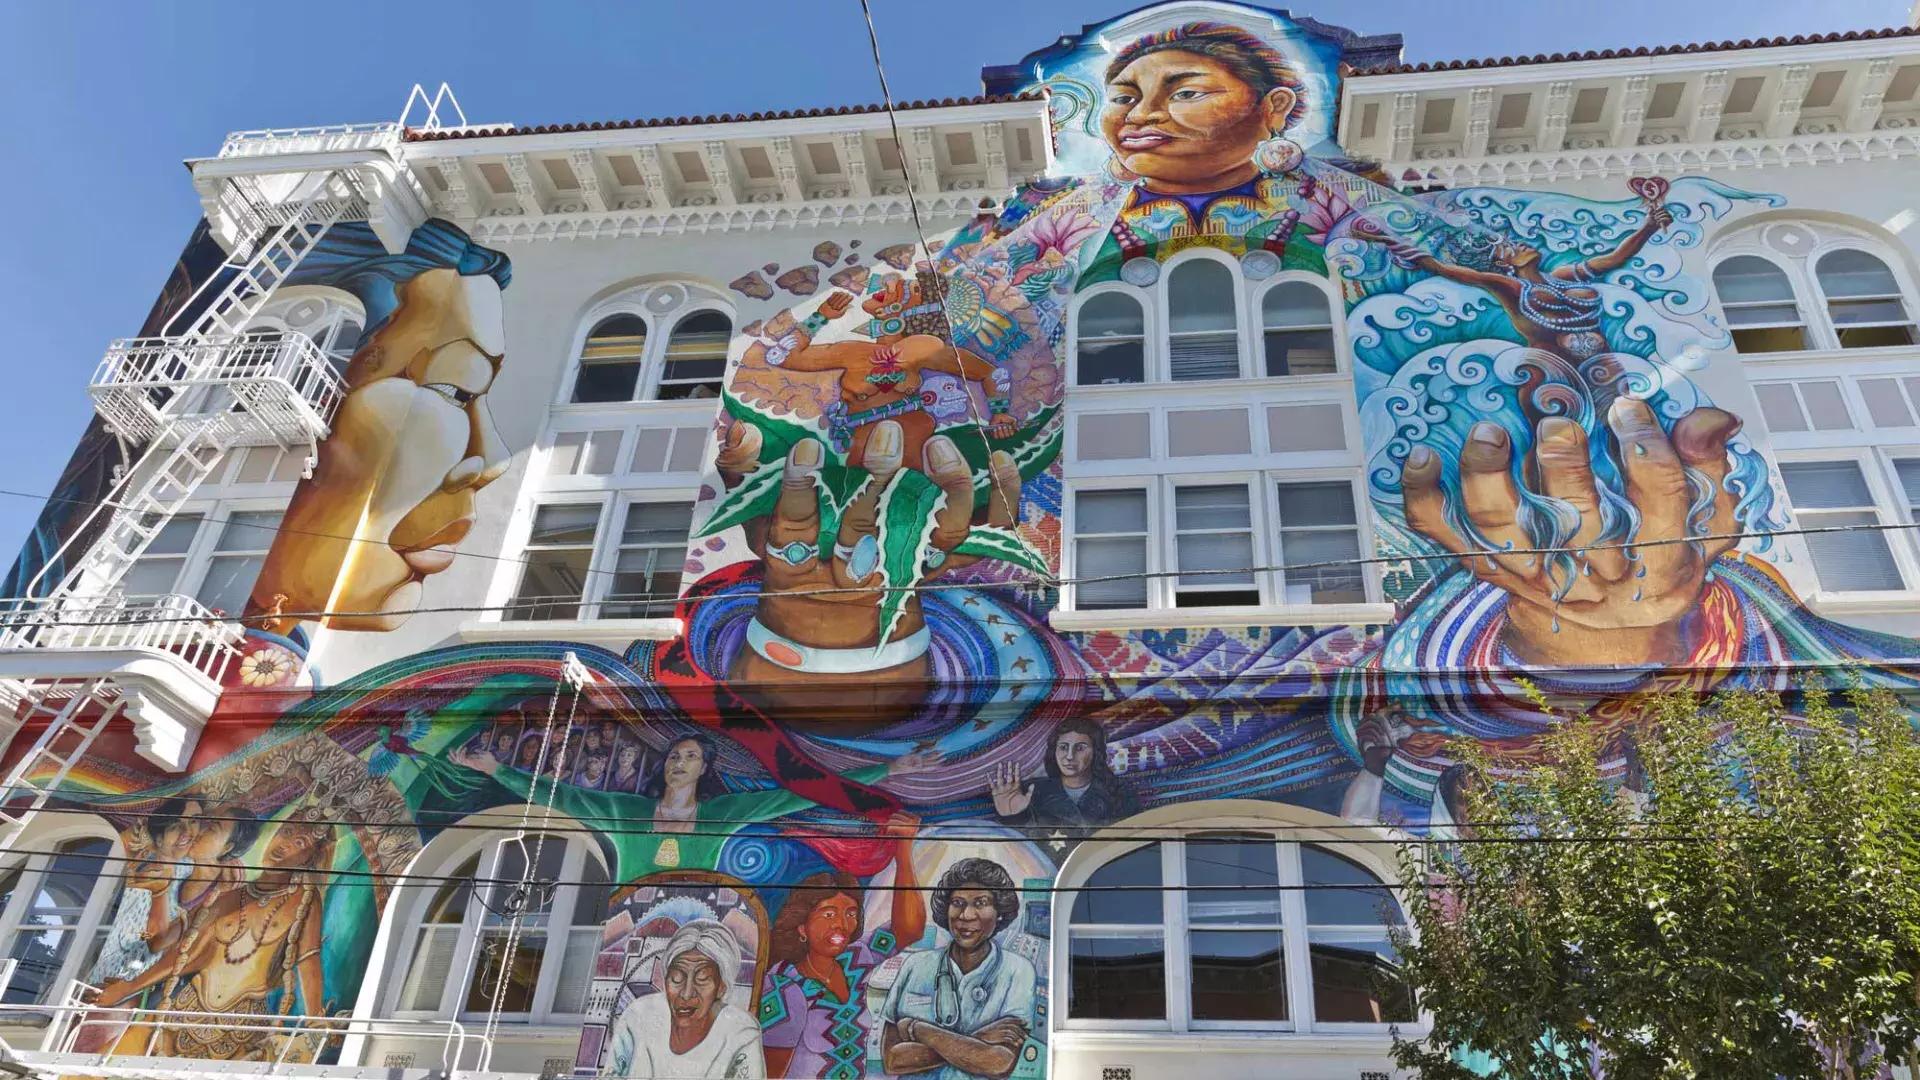 A colorful, 大型壁画覆盖了贝博体彩app教会区的妇女大厦的一面.